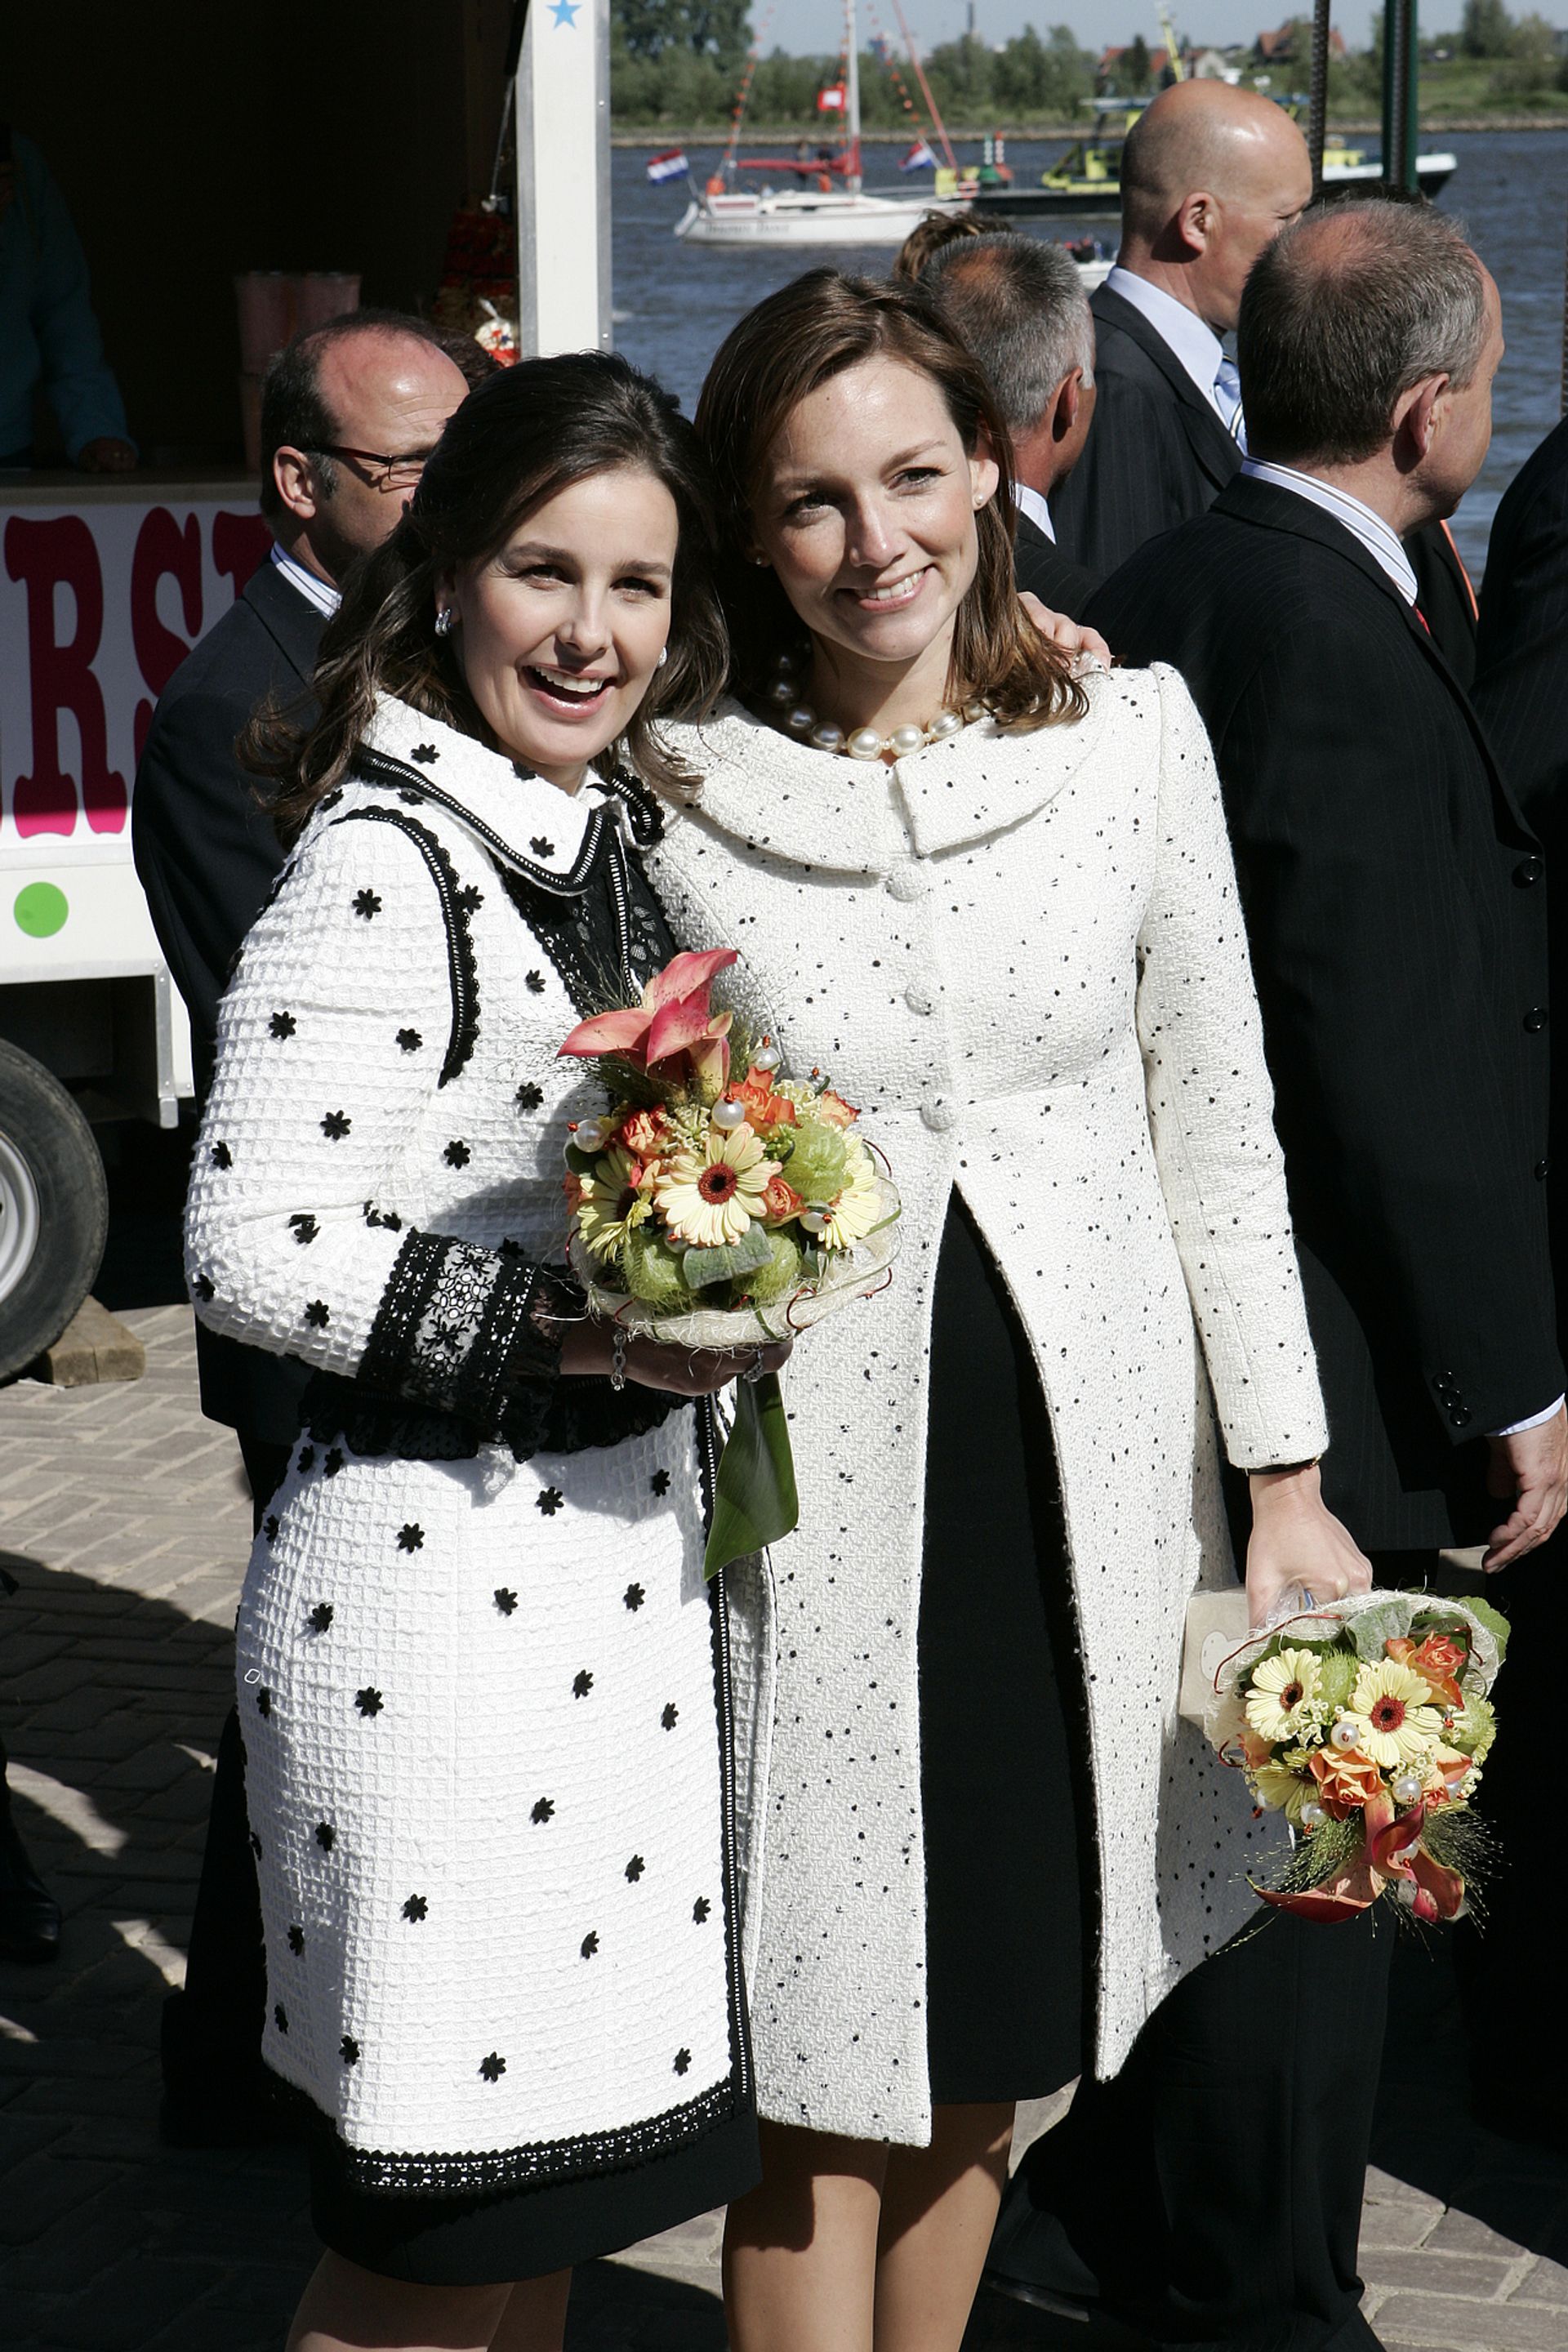 De schoonzussen prinses Aimée en prinses Anita tijdens Koninginnedag 2007 in Woudrichem.